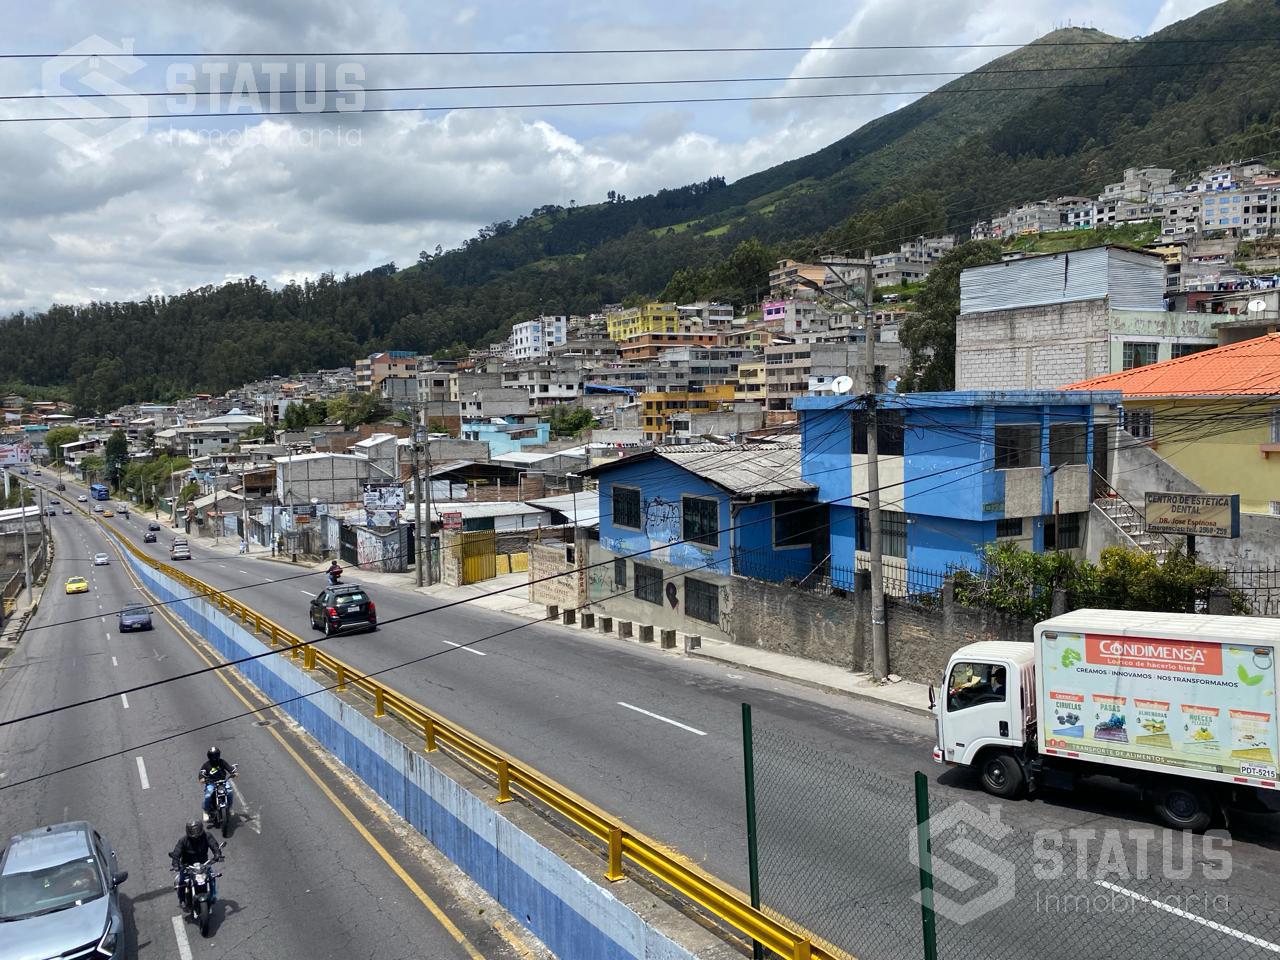 ¡De oportunidad! Vendo casa rentera con Terreno de 514m, sector Las Casas – Quito Norte, $139.000